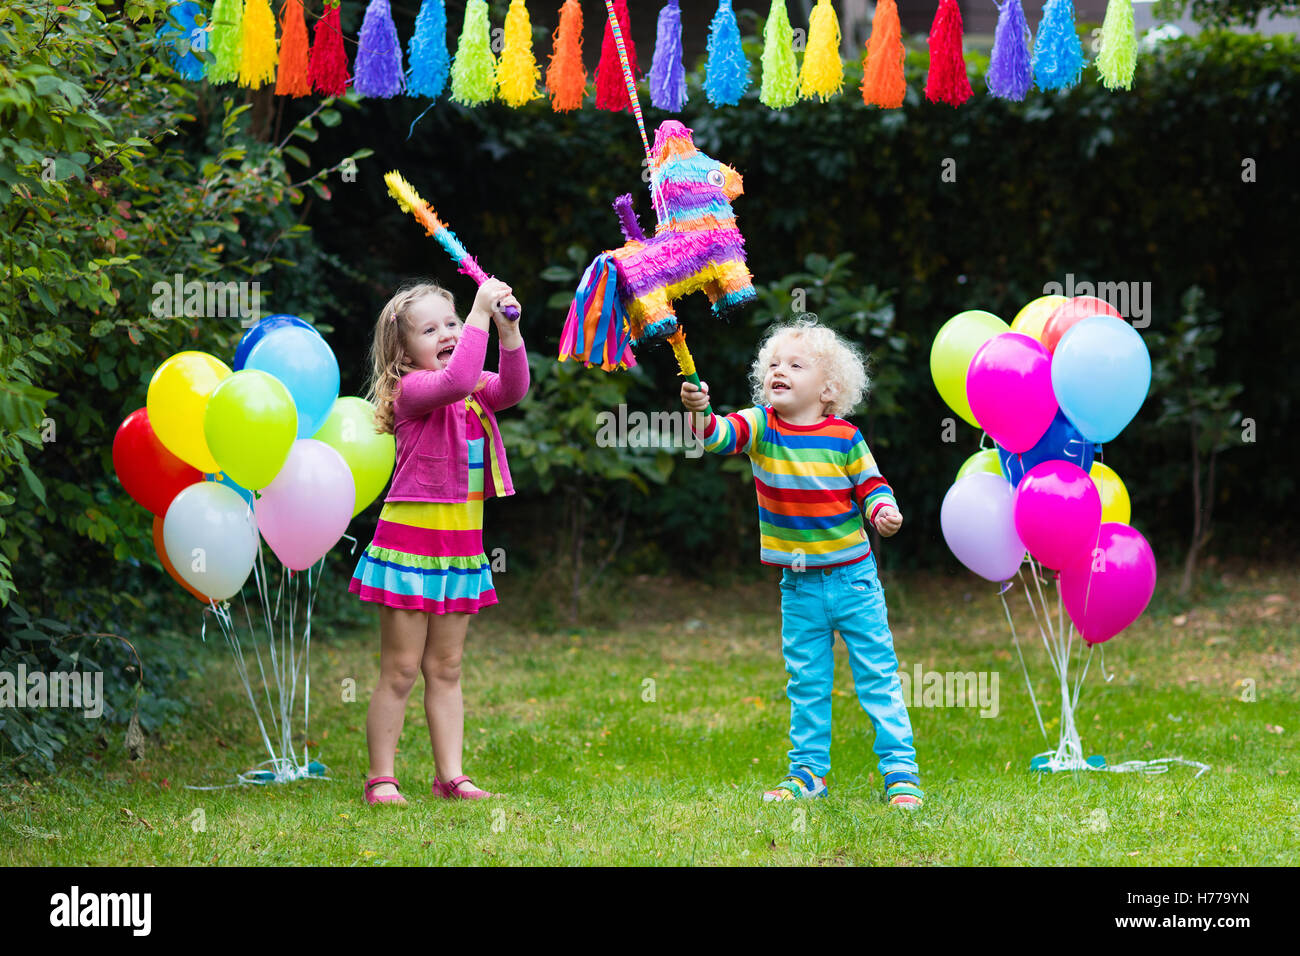 https://c8.alamy.com/compit/h779yn/kids-festa-di-compleanno-gruppo-di-bambini-colpendo-pinata-e-giocare-con-i-palloncini-famiglia-con-bambini-festeggia-il-compleanno-in-giardino-h779yn.jpg